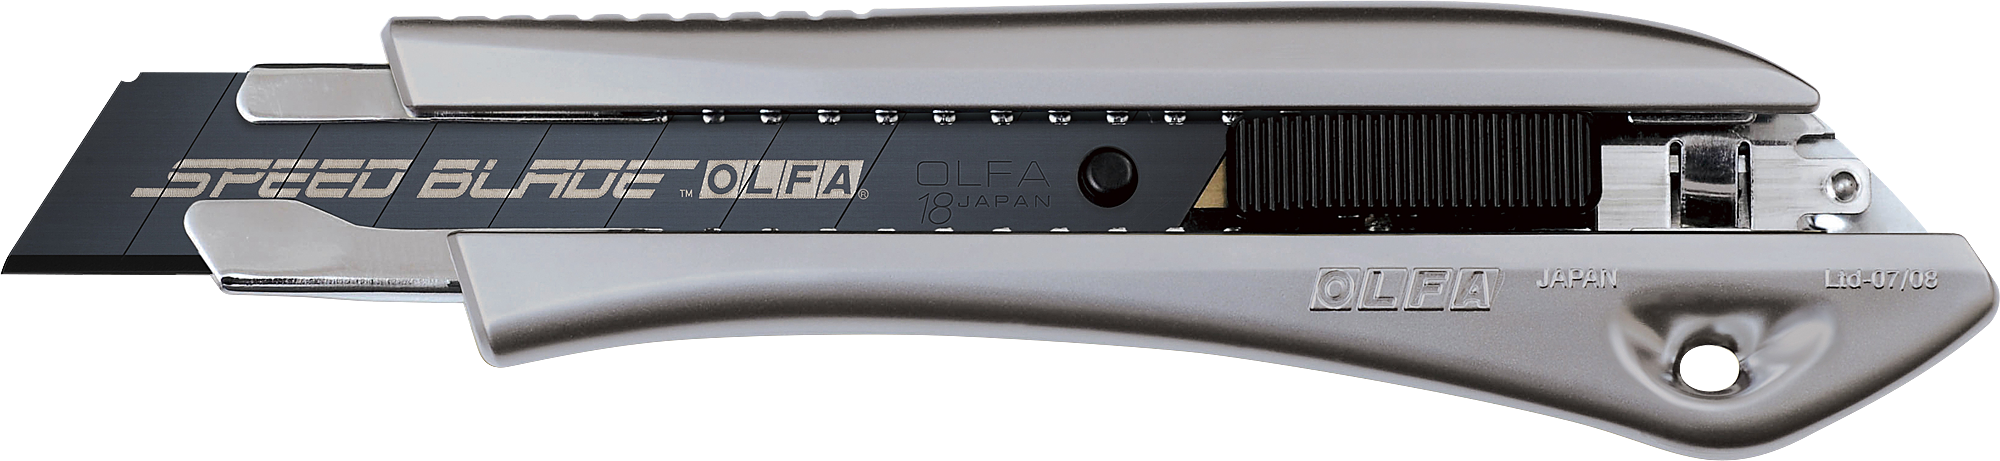 Сегментированные лезвия olfa. Нож 18мм, автофиксатор Olfa. Нож Olfa с сегментированным лезвием 18 мм ol-Ltd-l-LFB. Olfa лезвия 18мм. Olfa ol-Ltd-al-LFB.